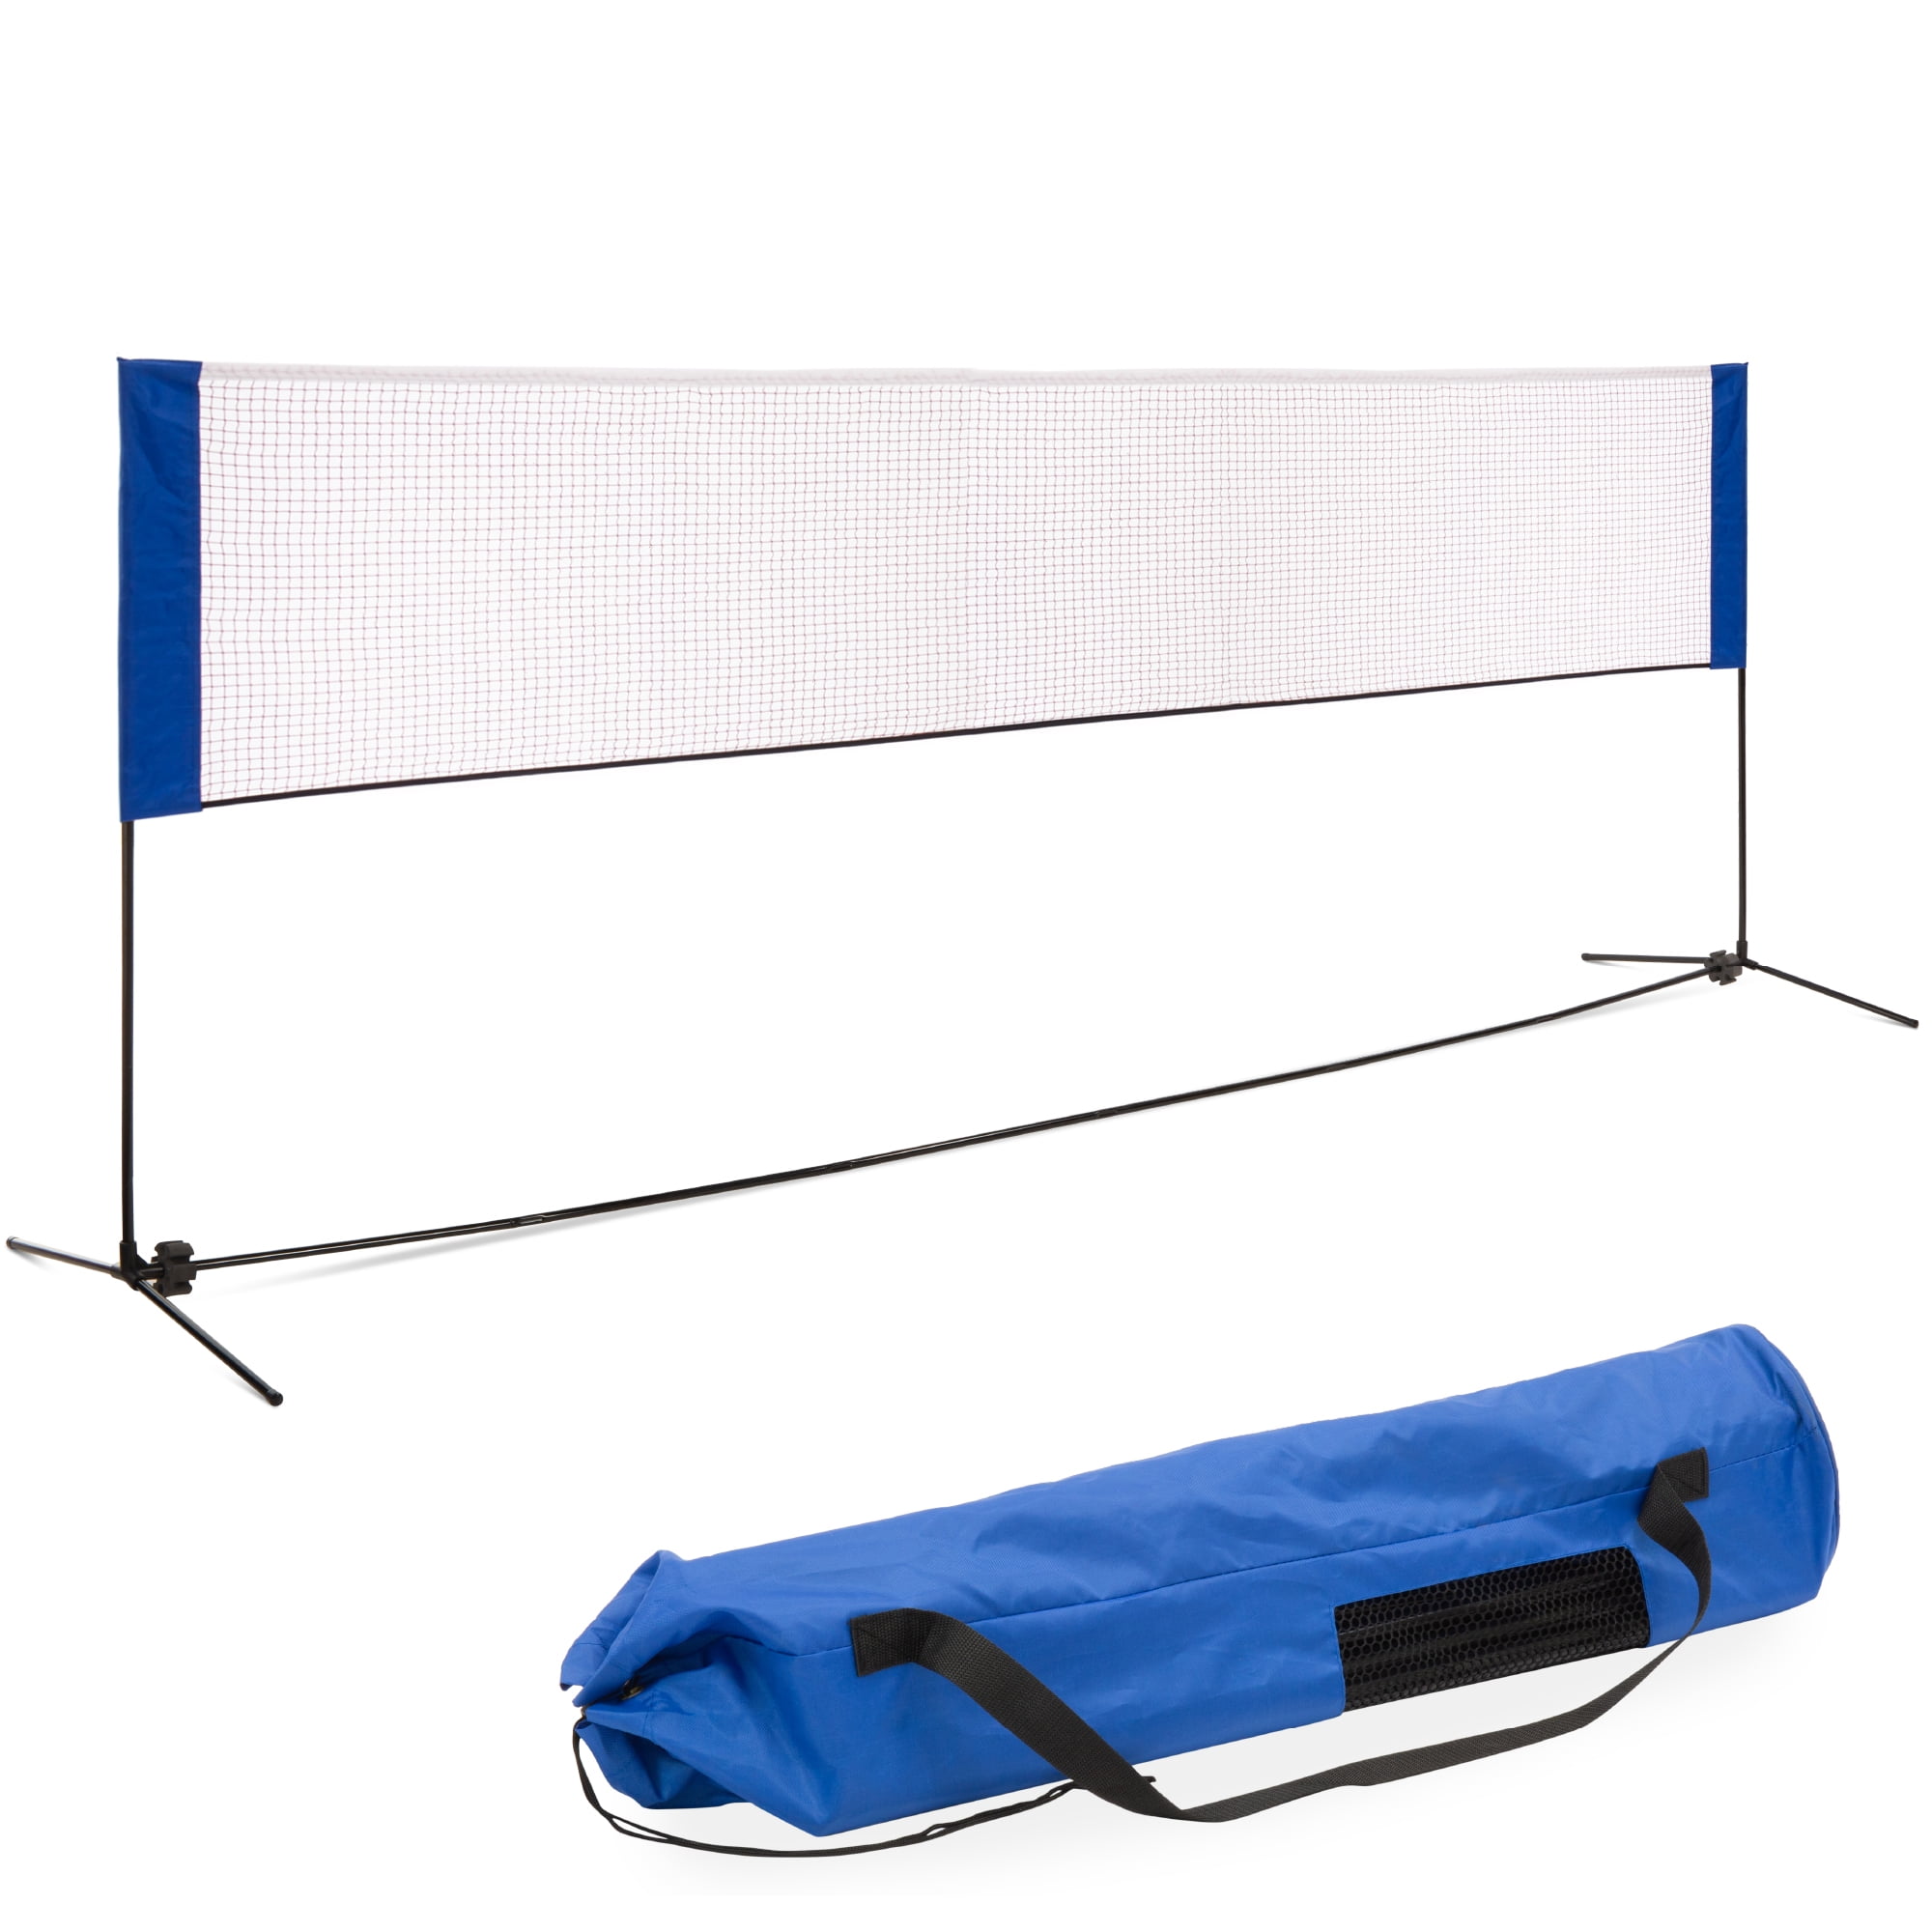 20ft Outdoor Badminton Tennis Volleyball Net Sports Mesh For Beach Garden Indoor 